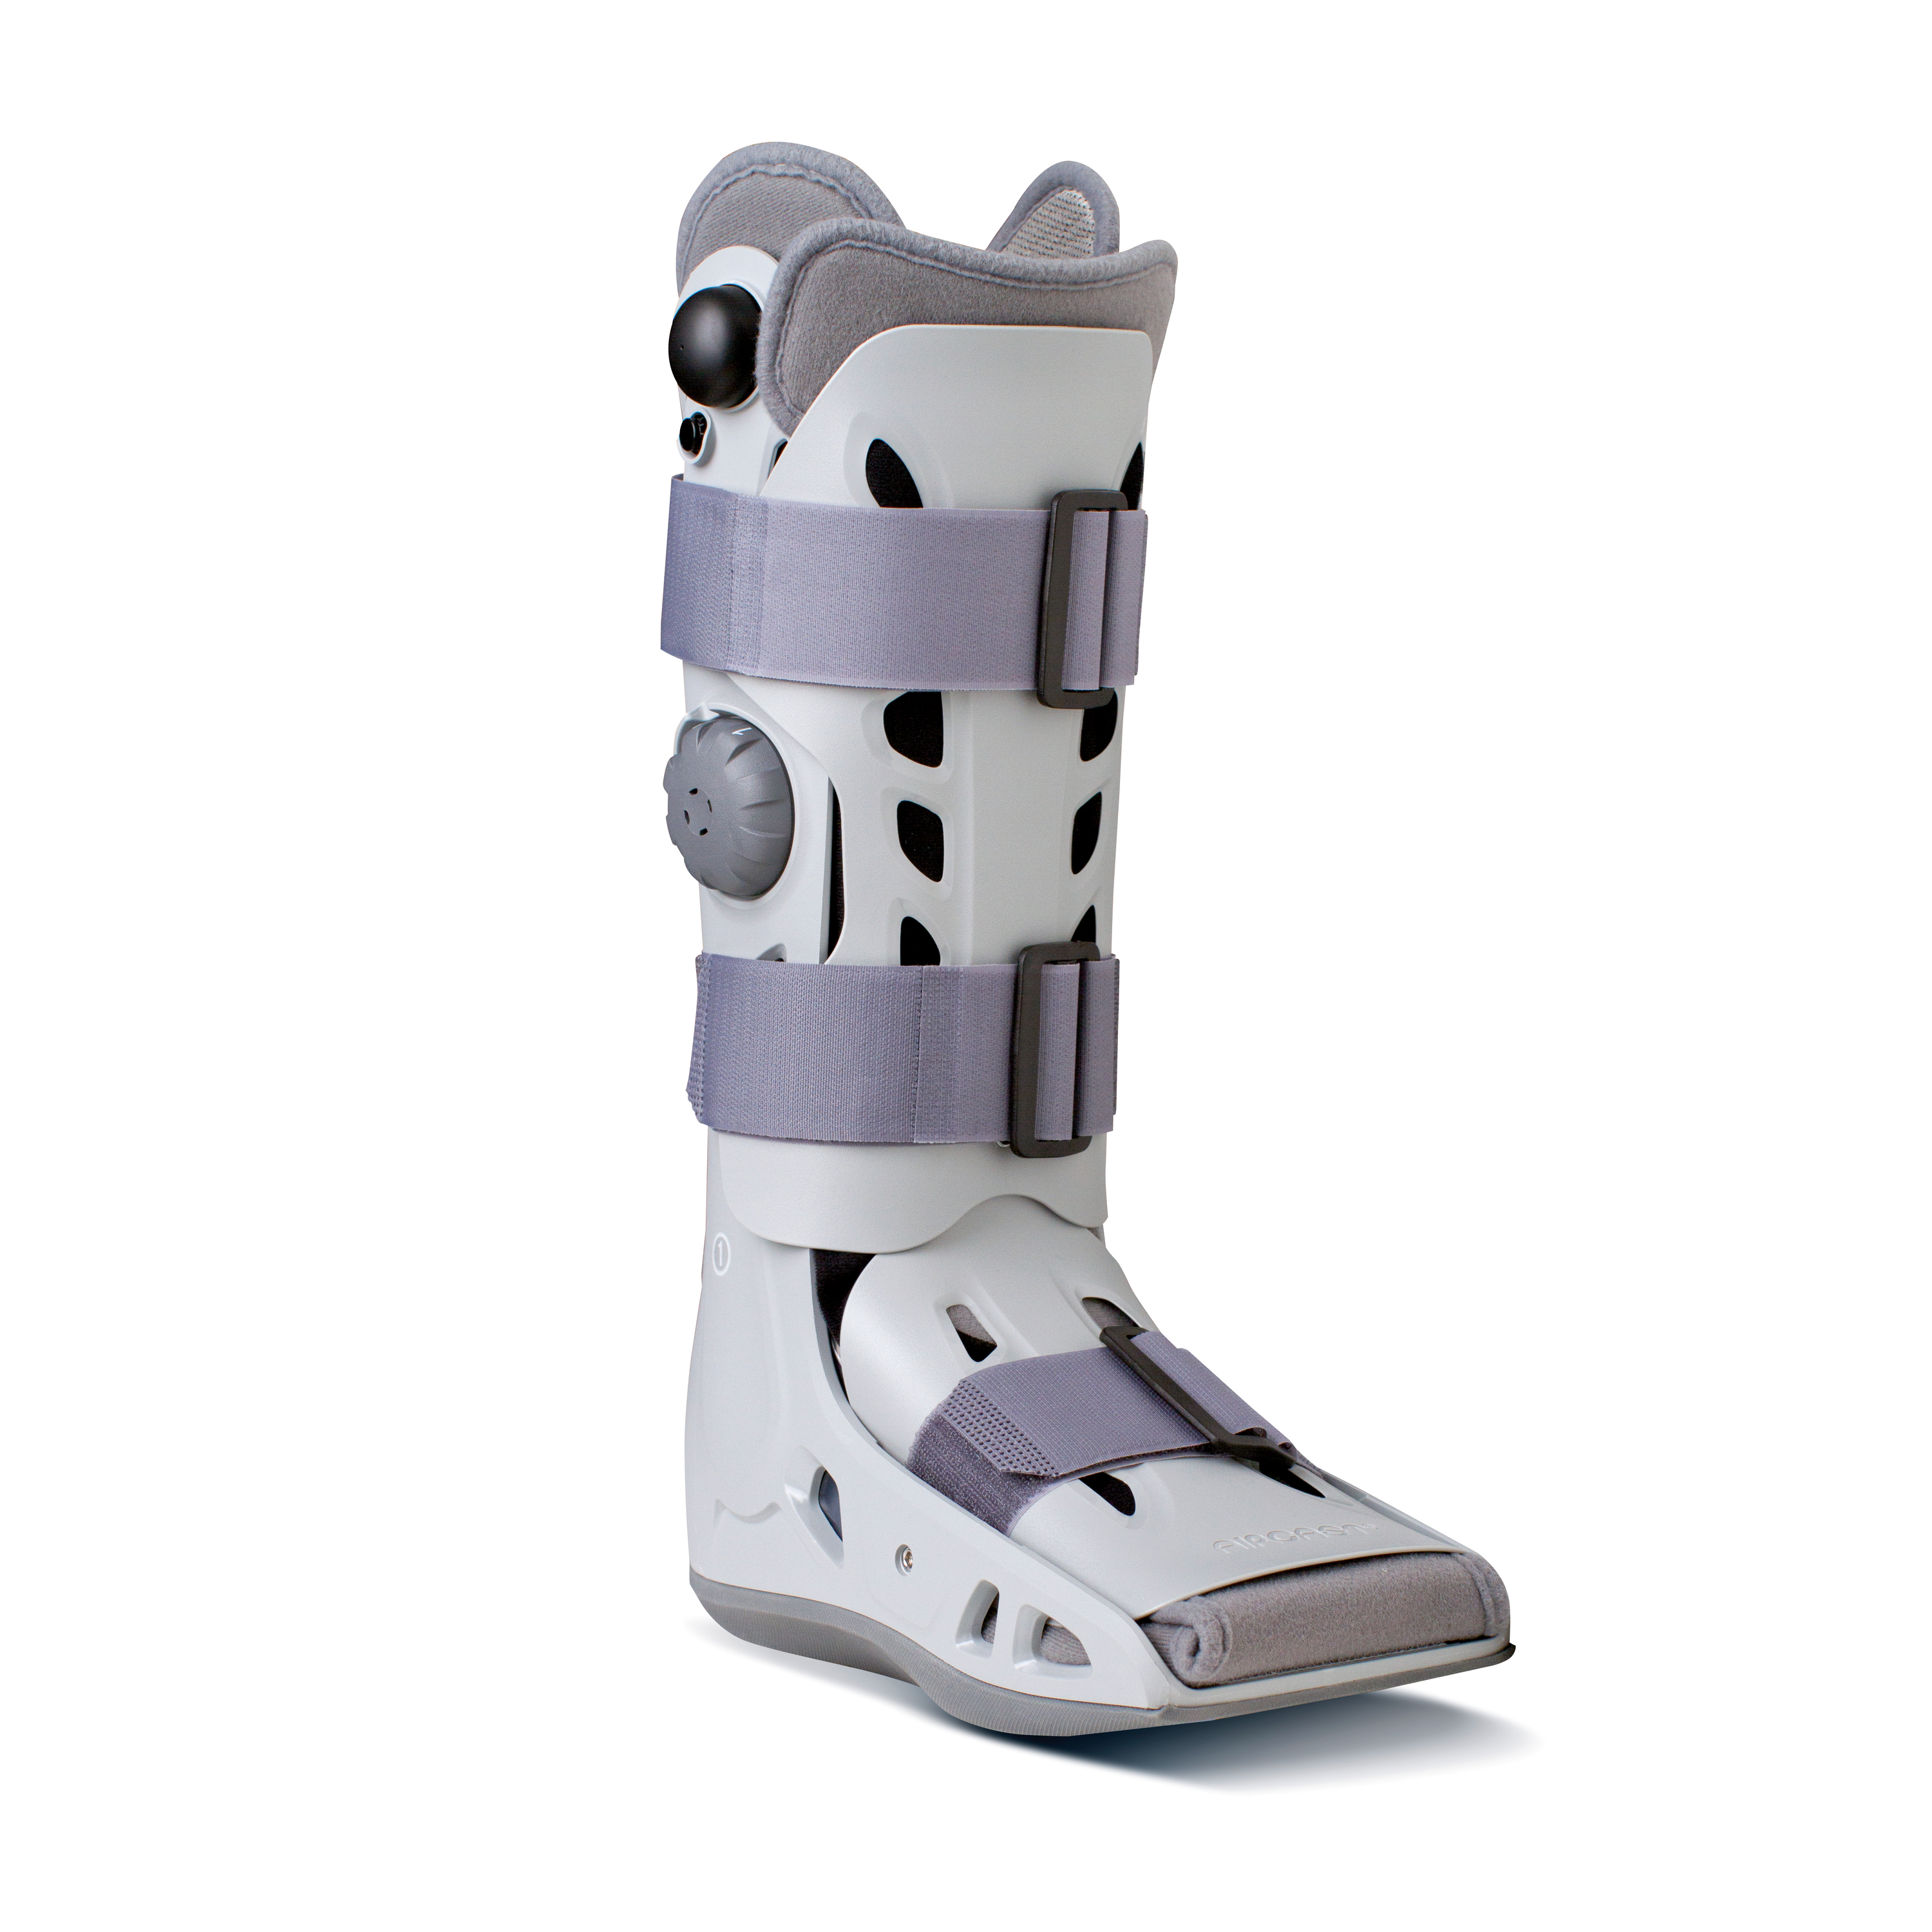 Produktbild AIRCAST® Airselect™ Elite Walker, Unterschenkel-Fuß-Orthese zur Immobilisierung in vorgegebener
Position